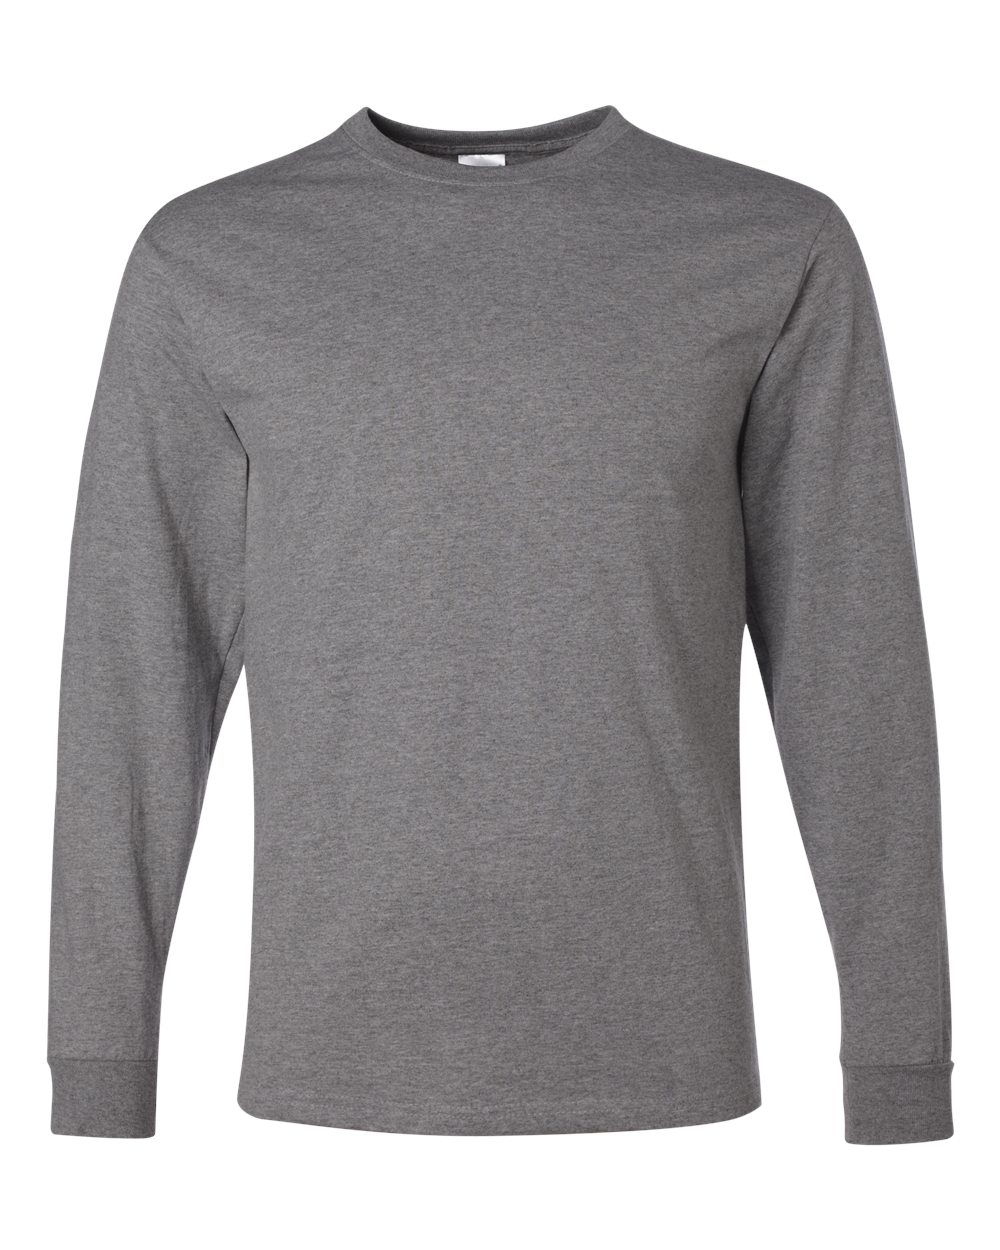 JERZEES - Heavyweight Blend 50/50 Long Sleeve T-Shirt - 29LS | eBay